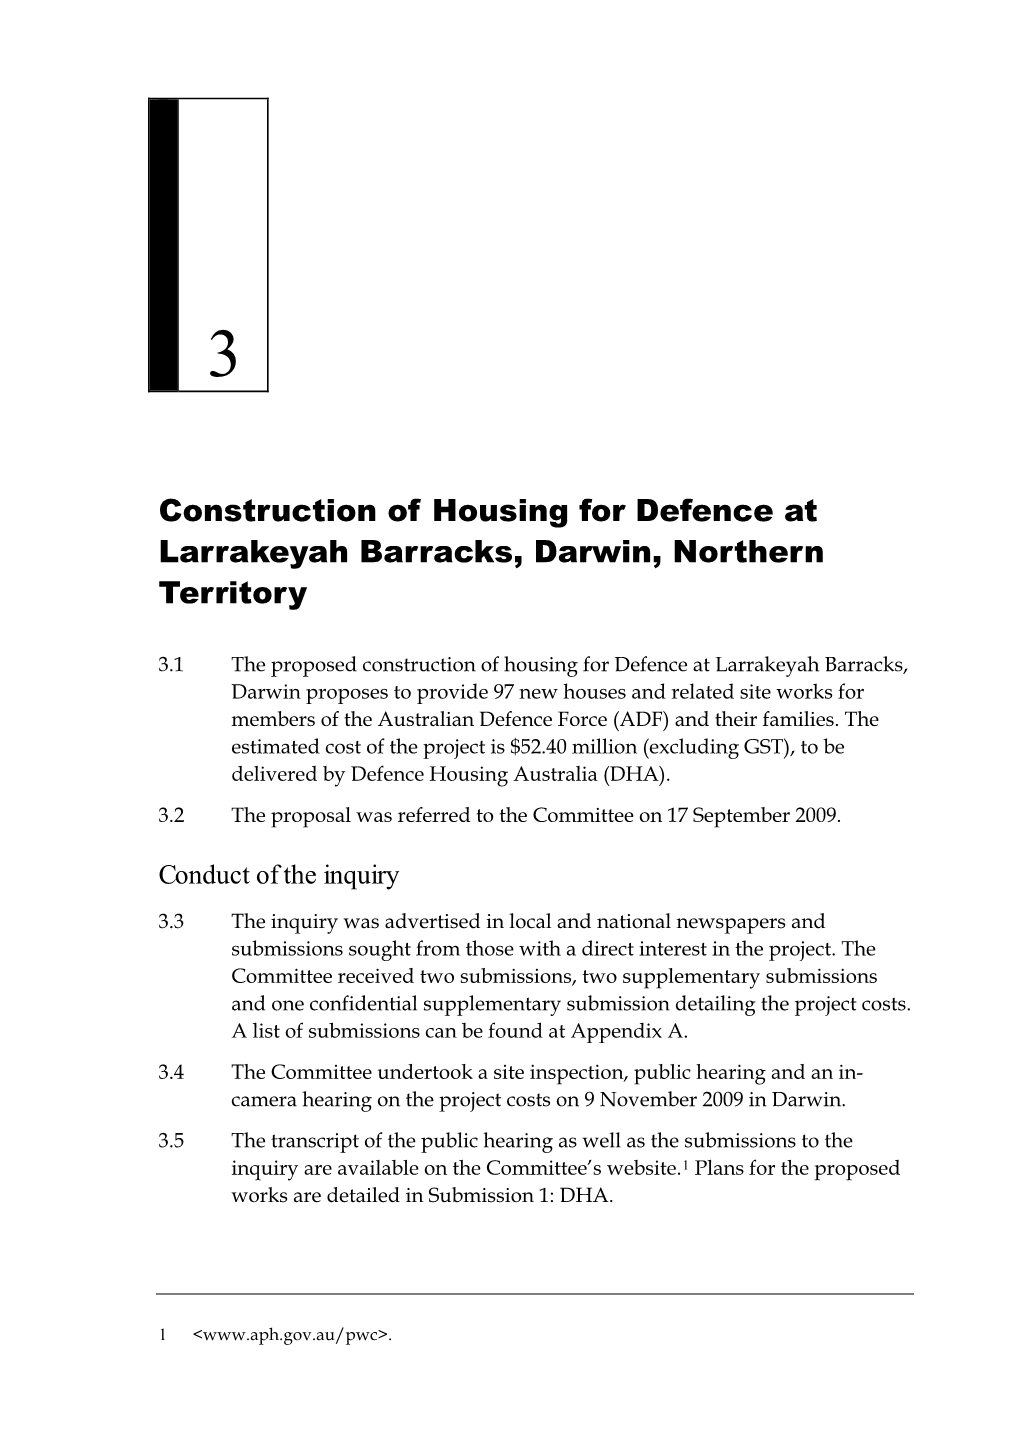 Chapter 3: Defence Housing at Larrakeyah Barracks